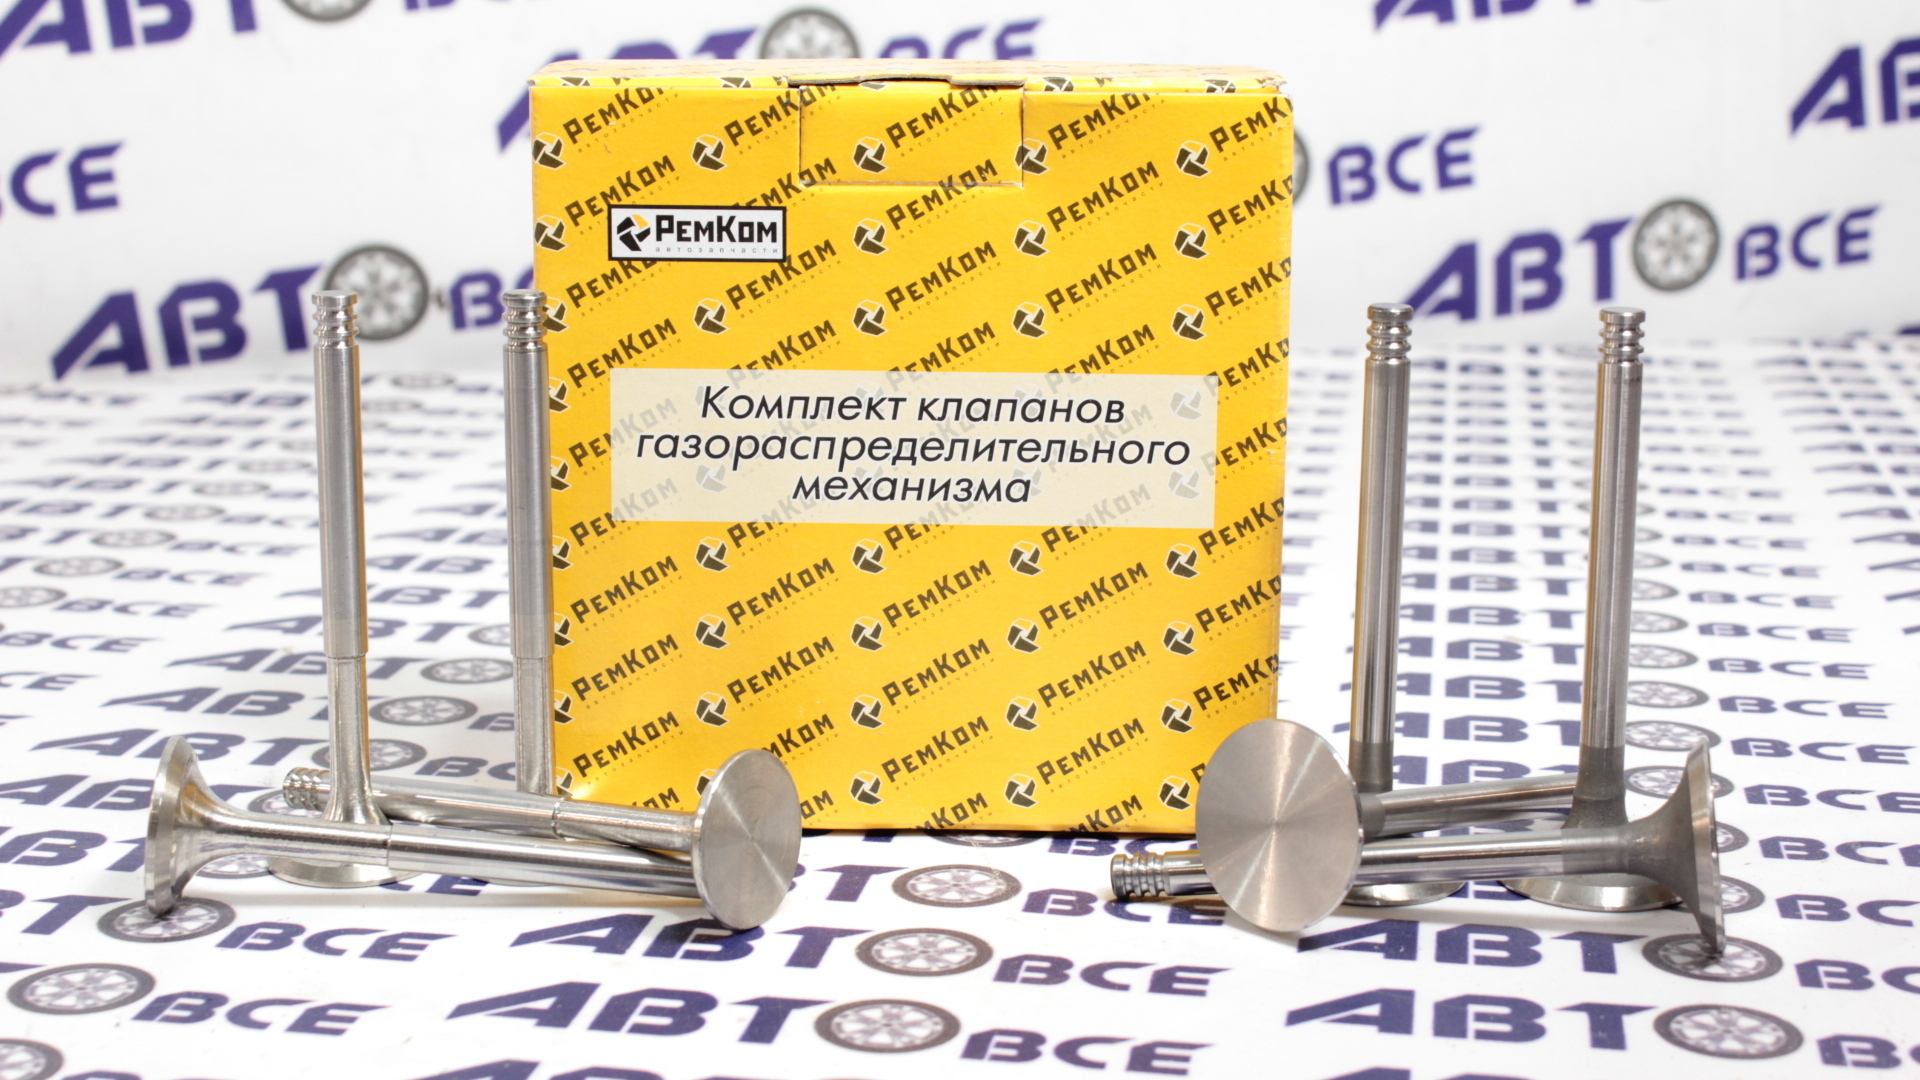 Клапан ГРМ 8V ВАЗ-21083-09-15-2110-1118 (1.5-1.6) (комплект 8 шт) РемКом